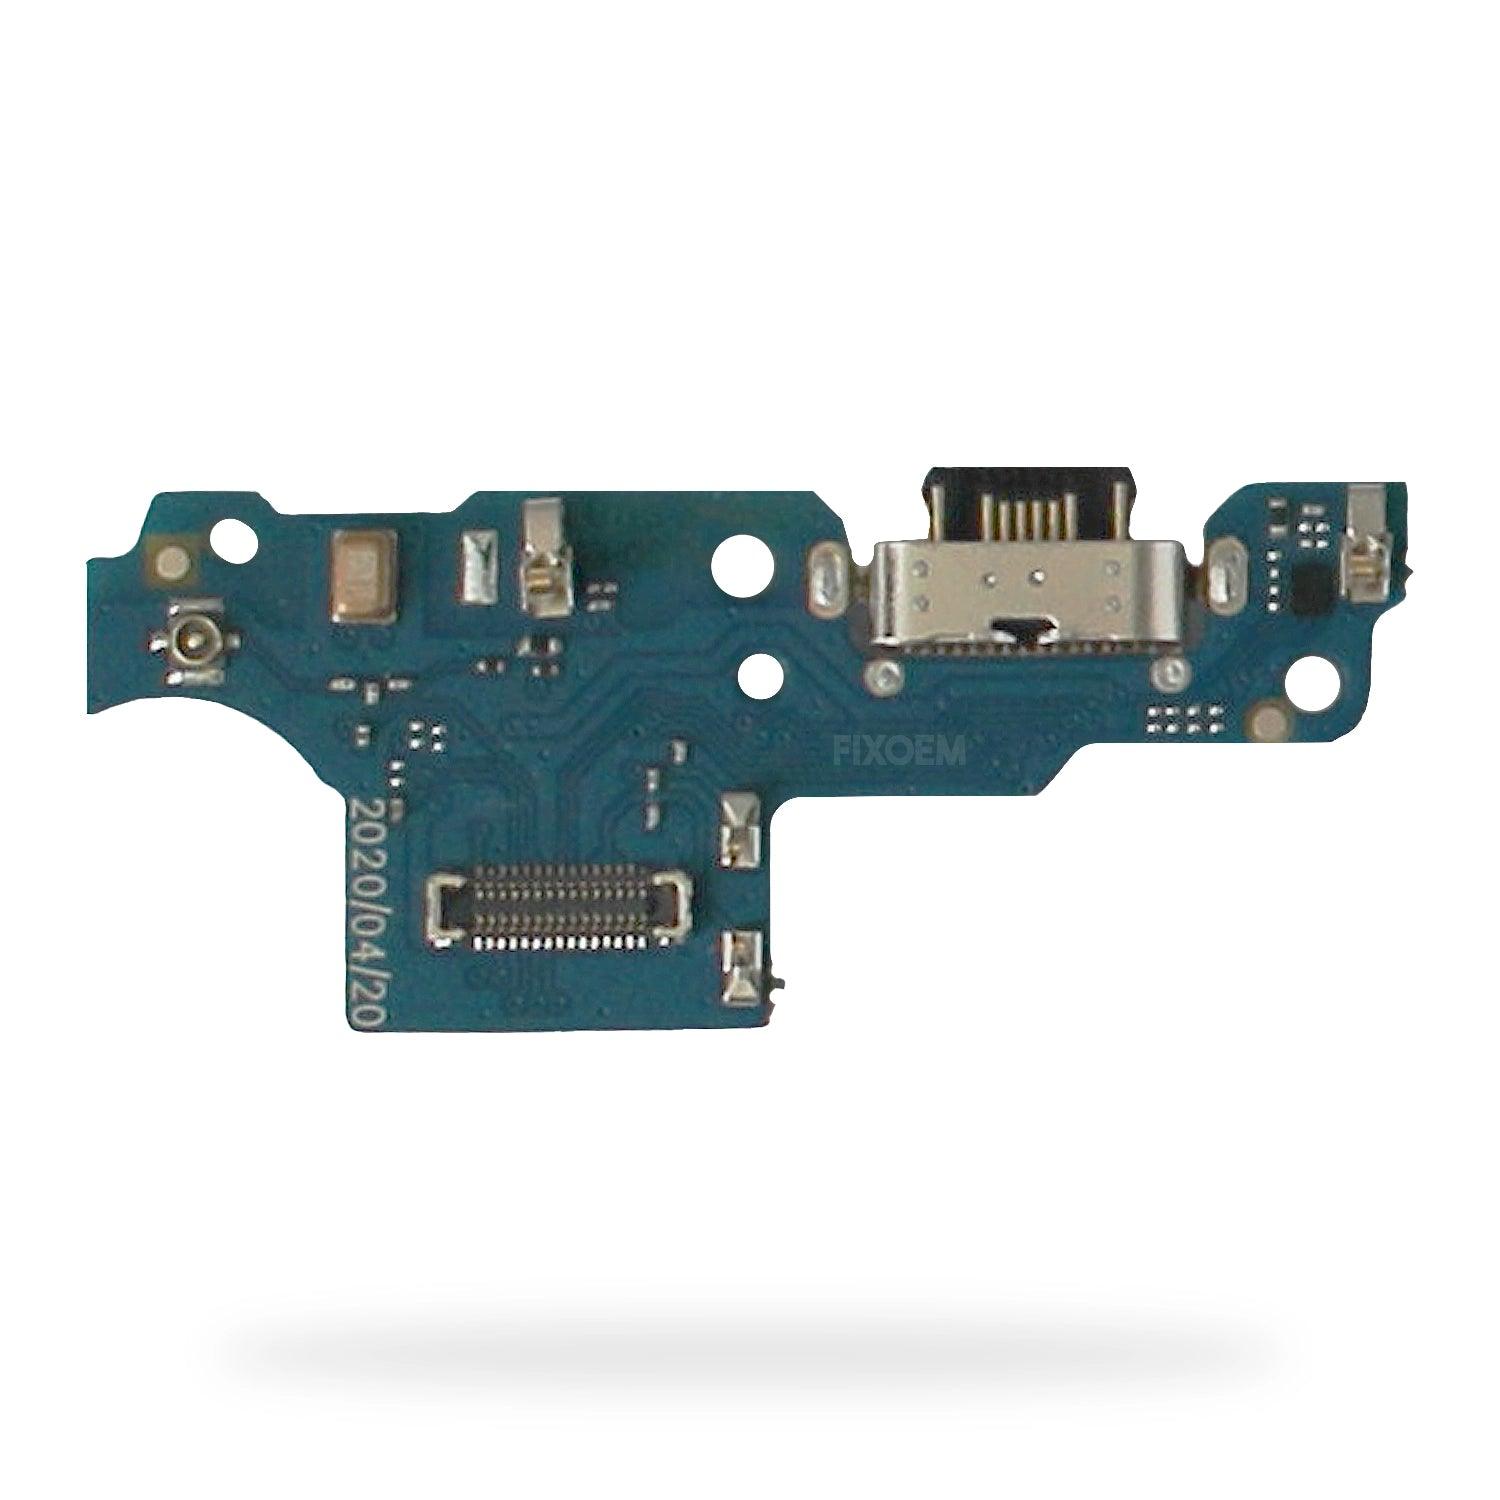 Centro Carga Moto G9 Play Xt2083-1 Xt2083-3 a solo $ 60.00 Refaccion y puestos celulares, refurbish y microelectronica.- FixOEM